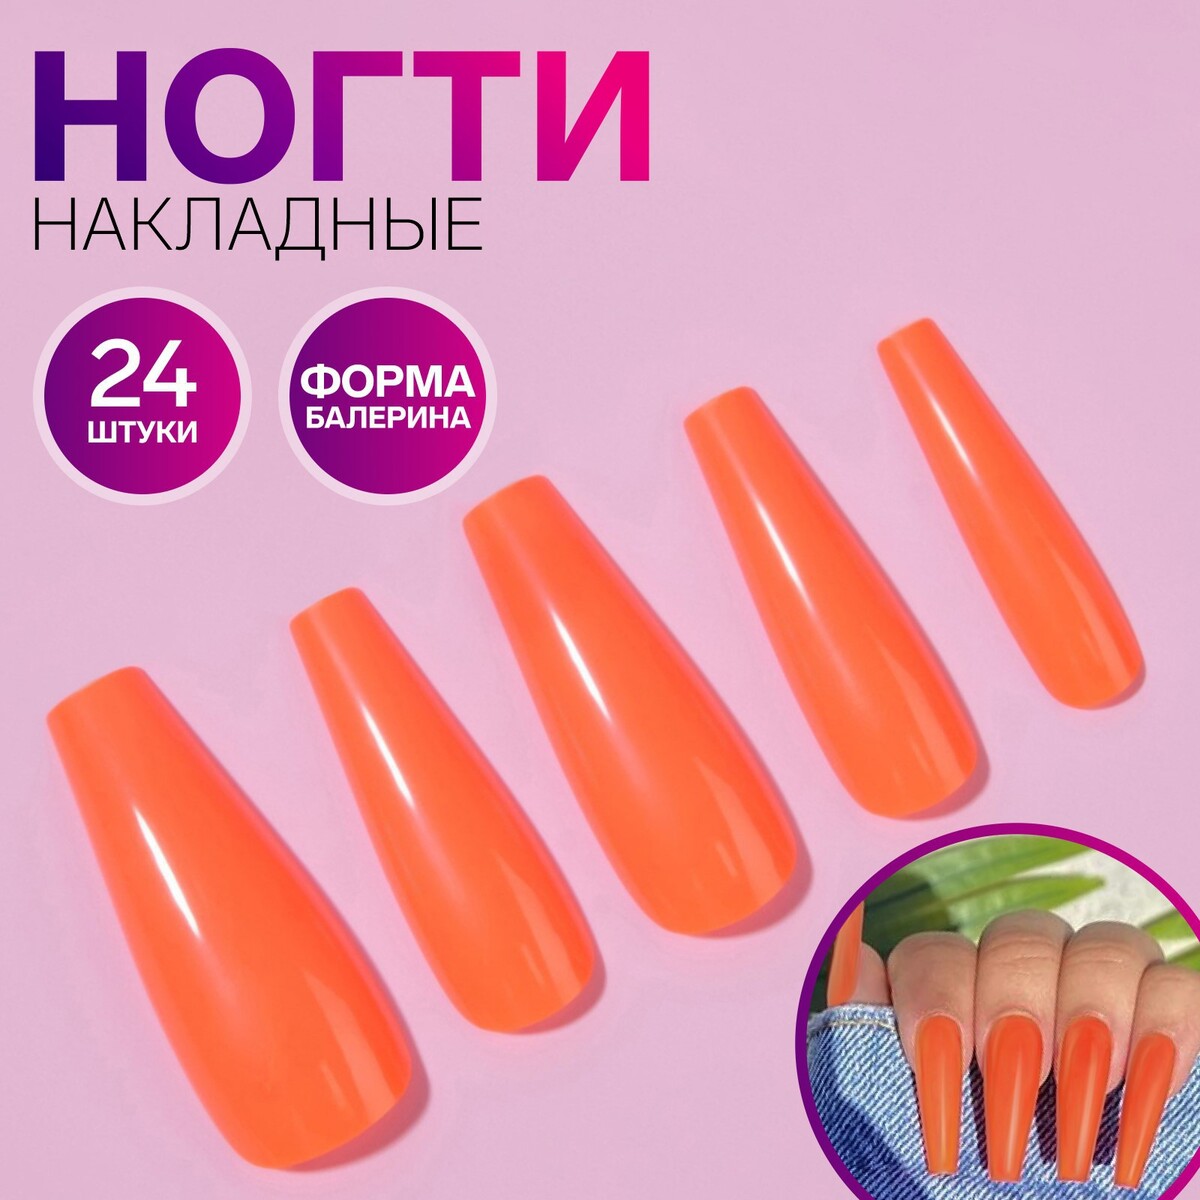 Накладные ногти, 24 шт, форма балерина, цвет неоновый оранжевый балерина